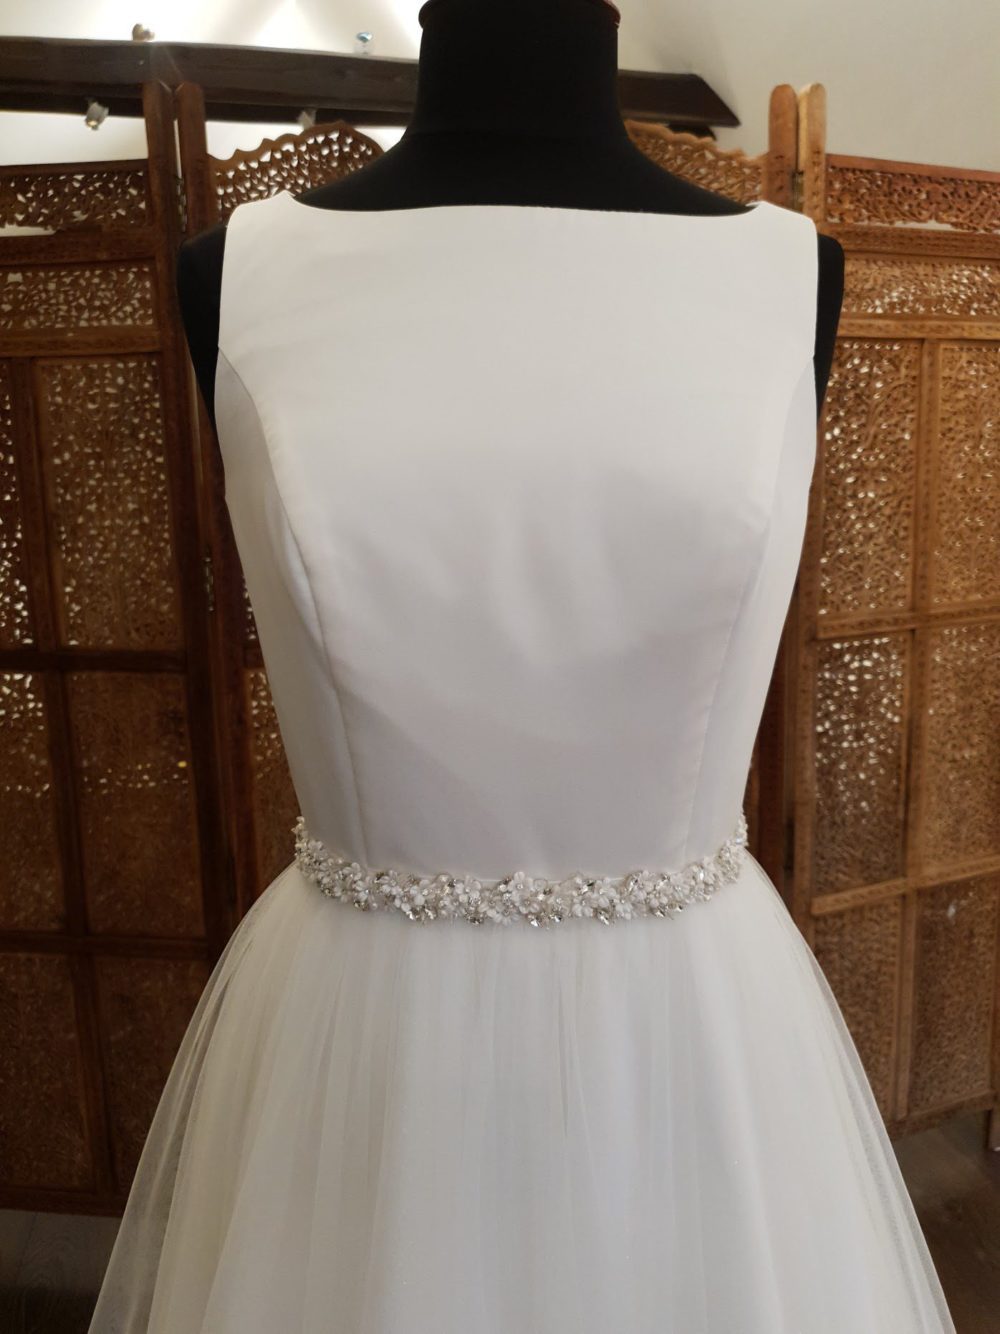 Budolfsen Kjoler. Re-designet kjole sammensat af overdel i satin fra en udgået konfirmationskjole og et nyt tylskørt med glimmer fra Bianco Evento.